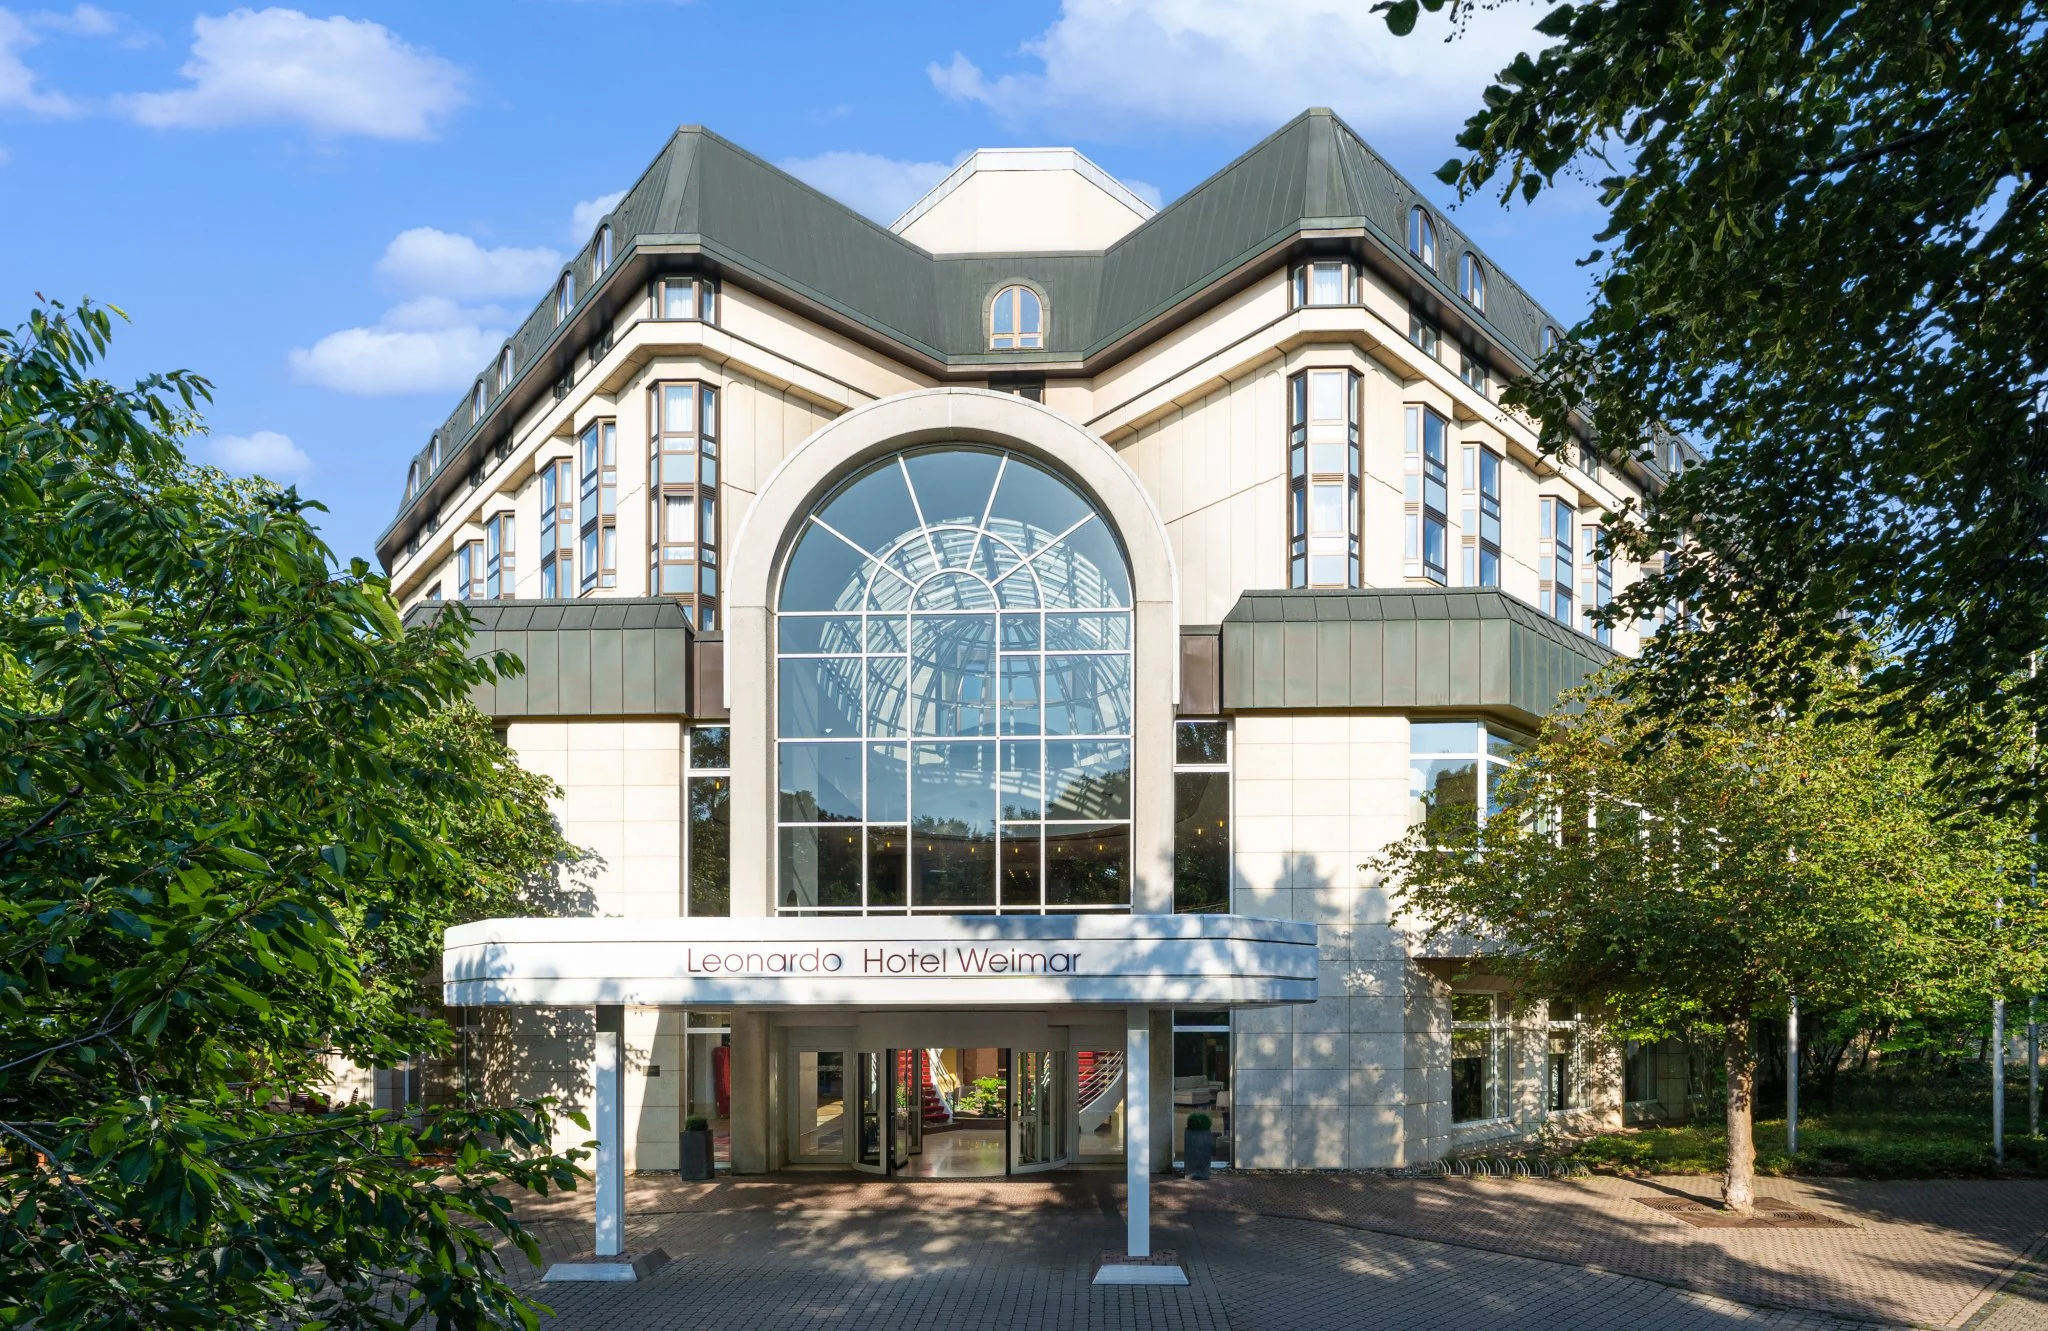 Leonardo Hotel Weimar - Exterieur